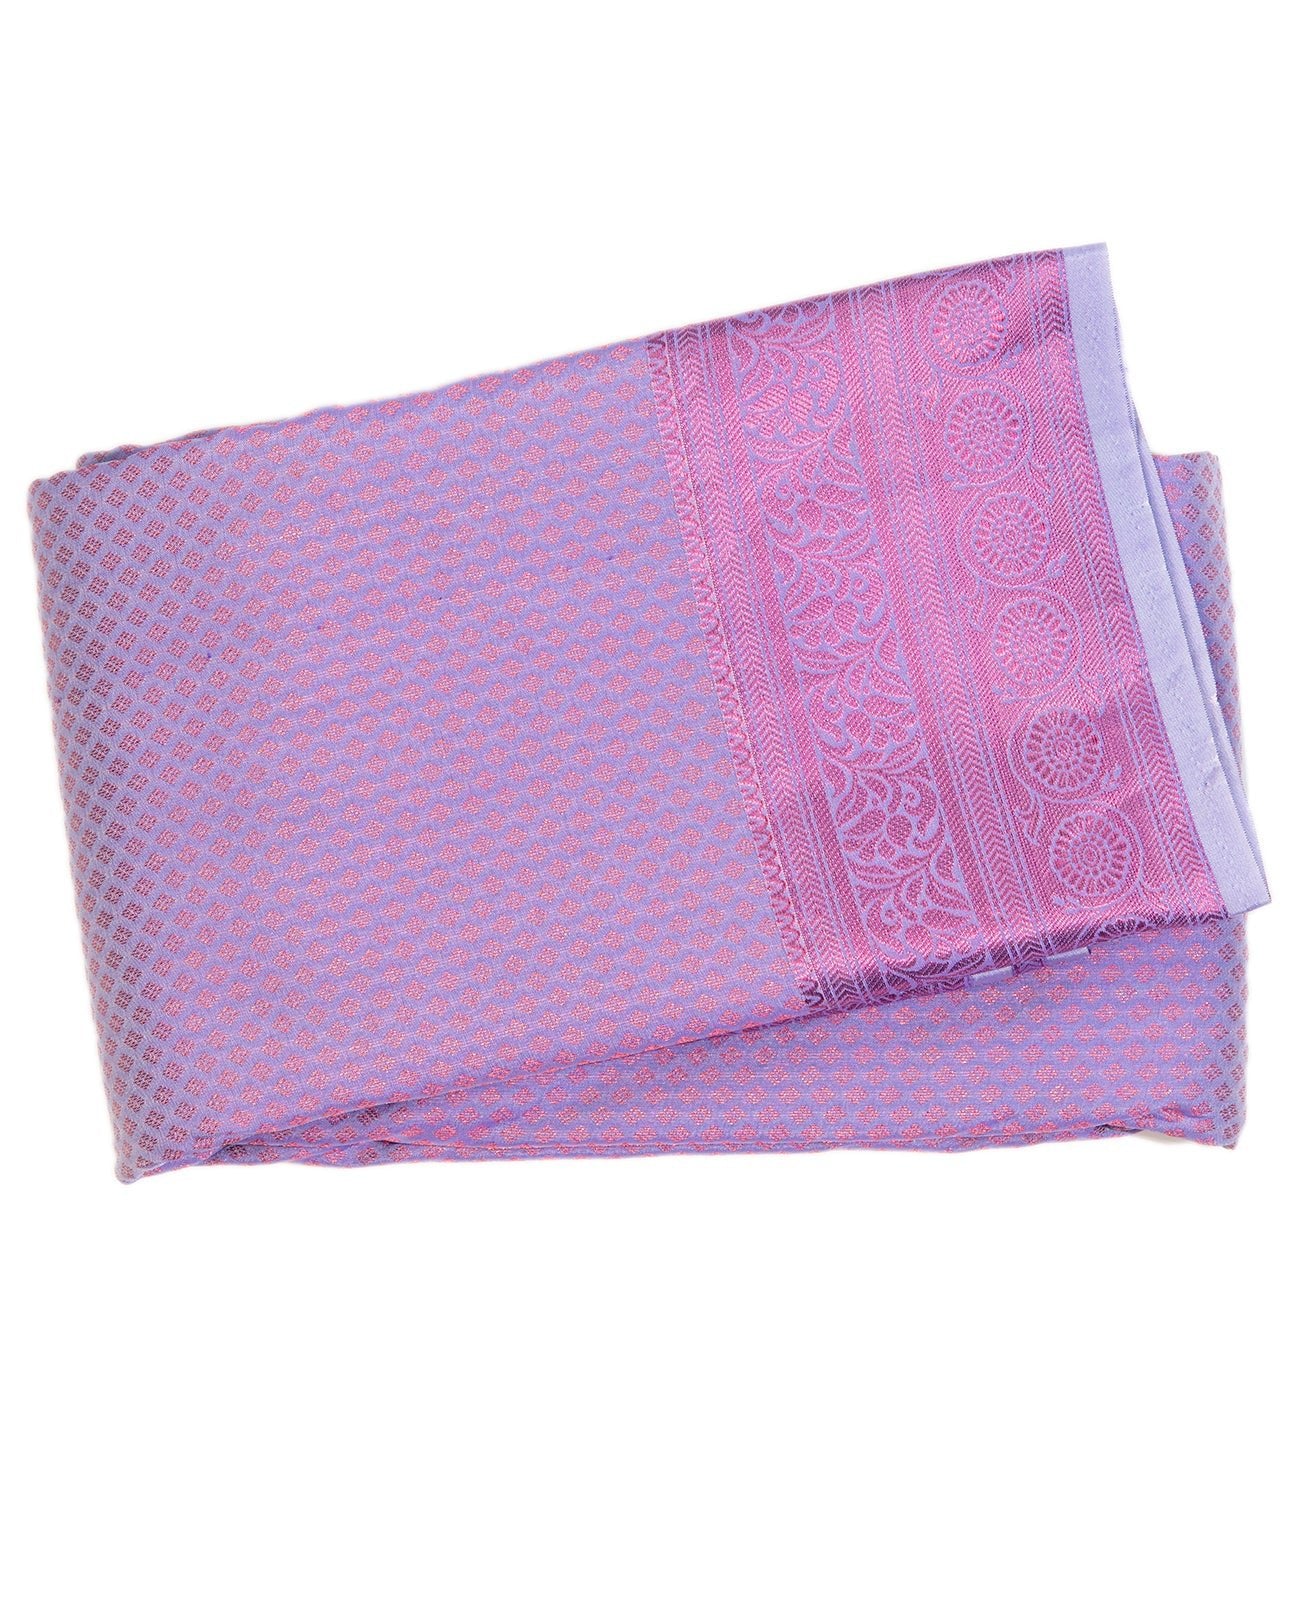 Periwinkle (Lavender) Wedding saree - swayamvara silks